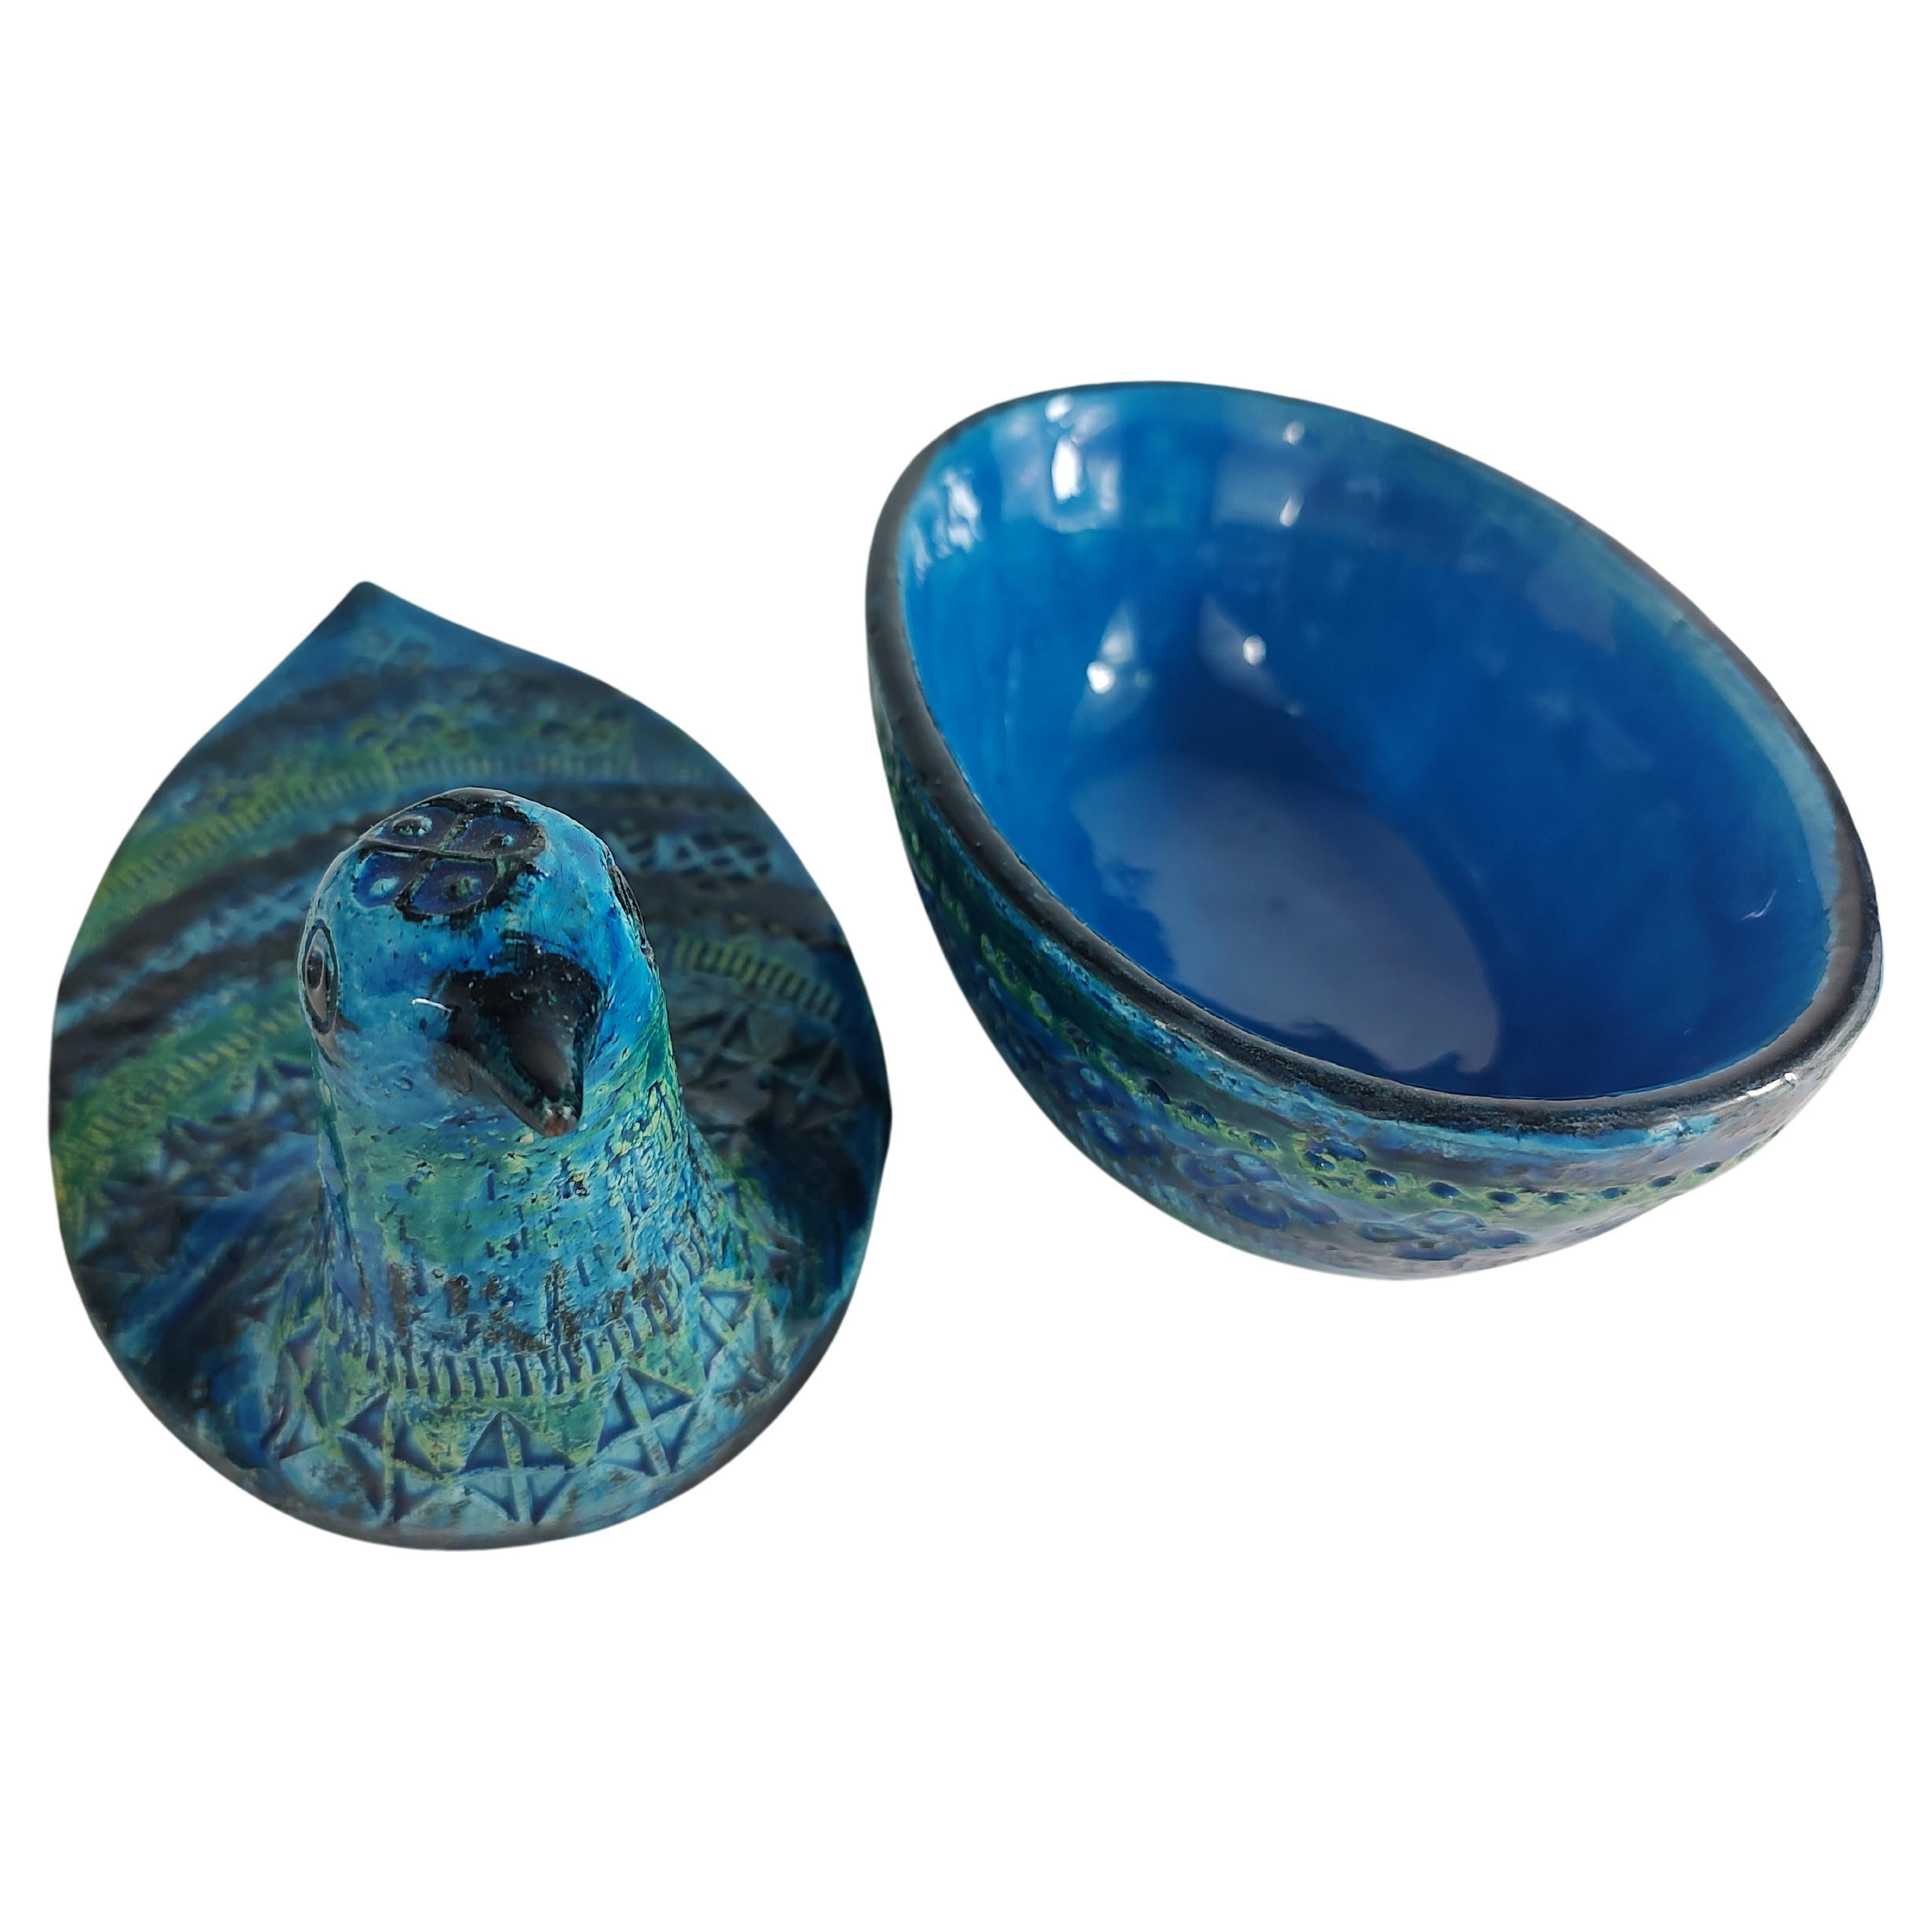 Fabuleuse jarre couverte à deux pièces en forme de poule  - oiseau émaillé en bleu Rimini par Aldo Londi et Bitossi. Une belle réalisation et une  combinaison de couleurs très sereine avec des impressions fantastiques. Créée en Italie au milieu des